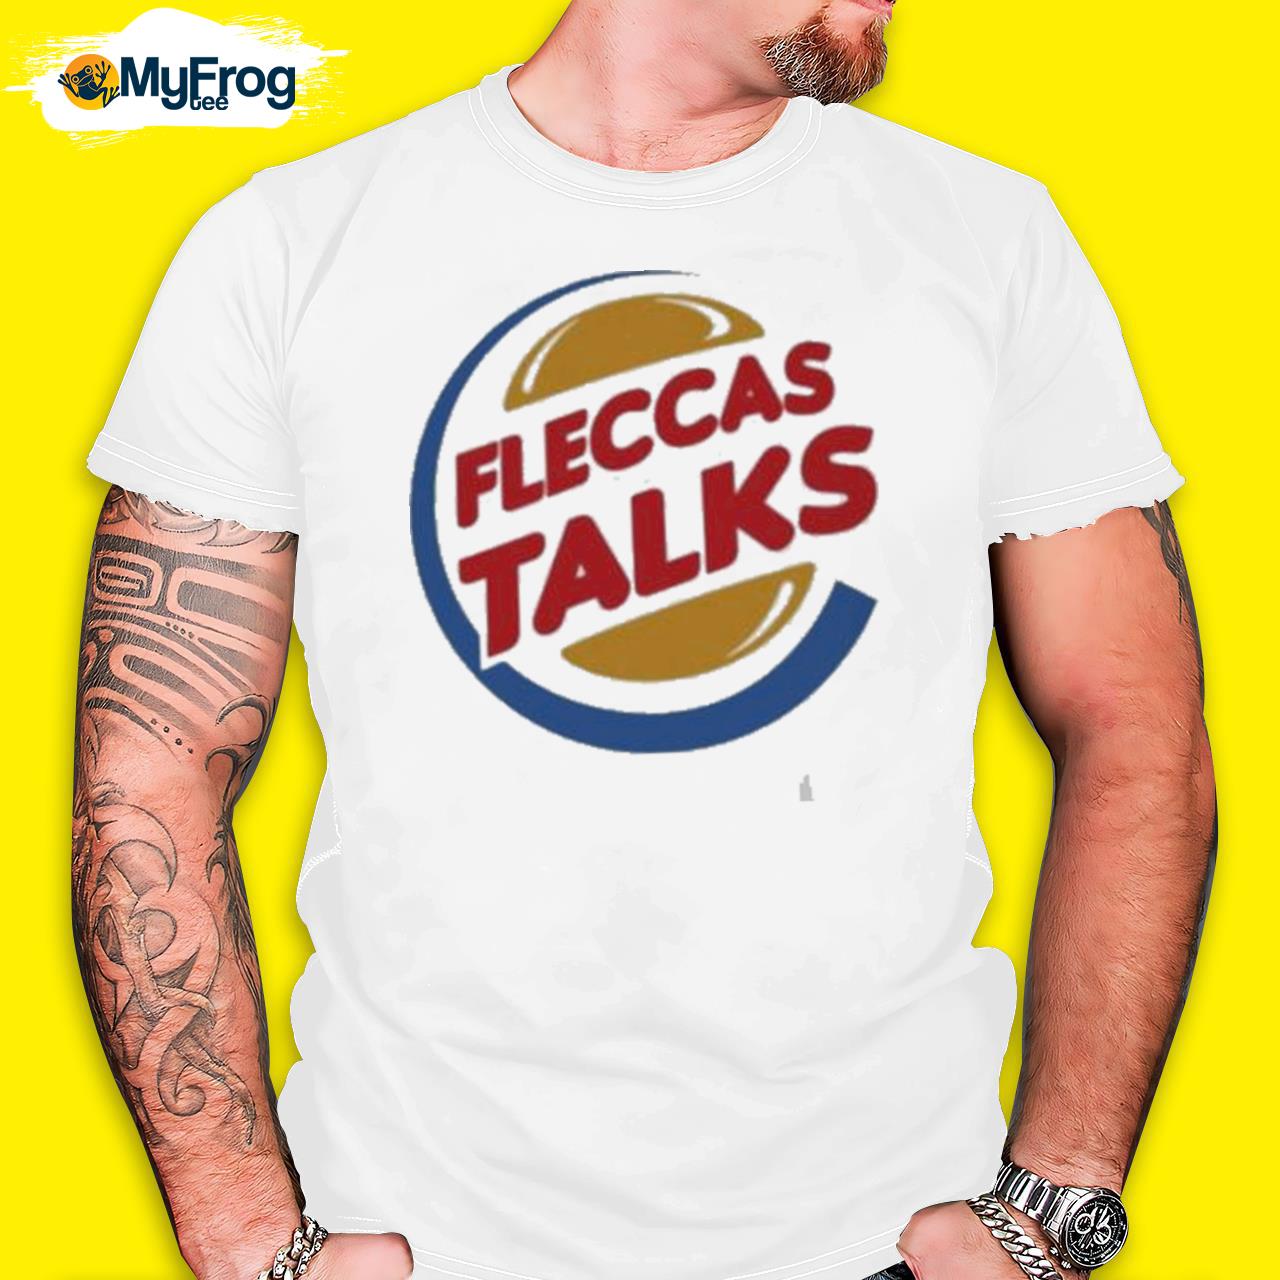 Official Fleccas Talks Burger shirt